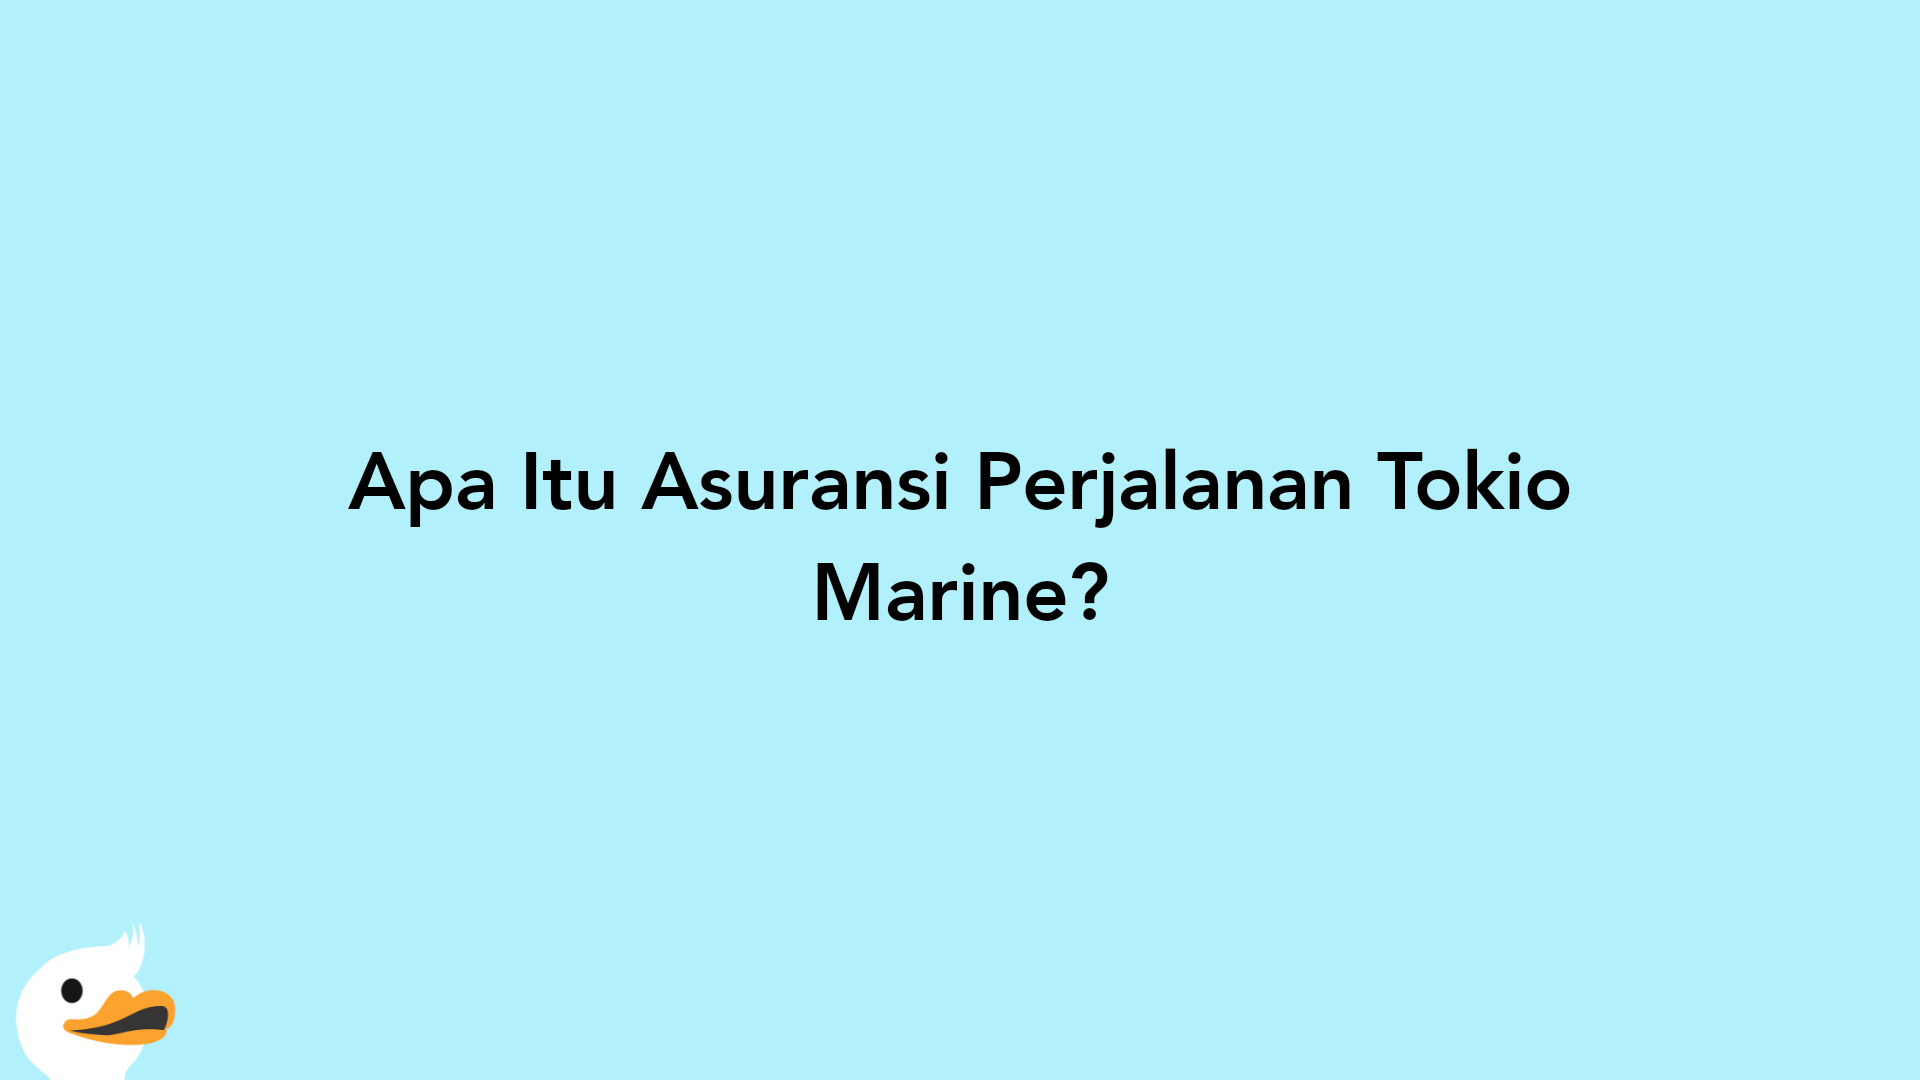 Apa Itu Asuransi Perjalanan Tokio Marine?